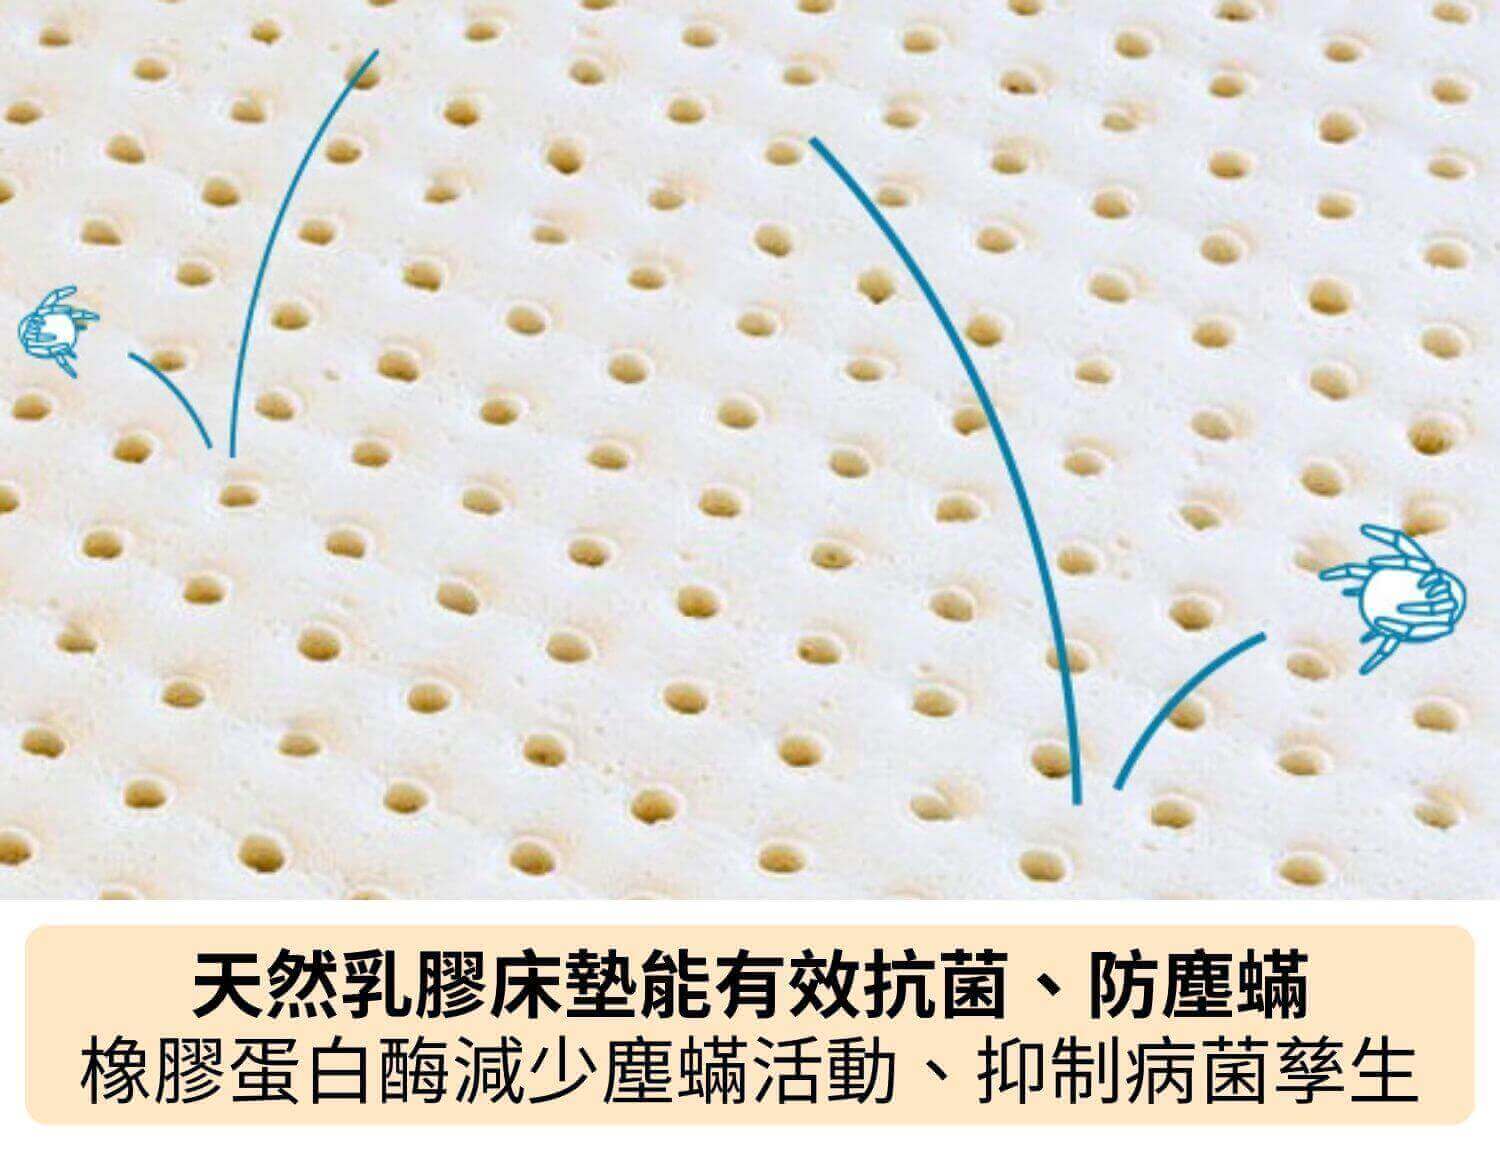 天然乳膠床墊能有效抗菌、防塵蟎，含有橡膠蛋白酶能減少塵蟎活動、抑制病菌孳生